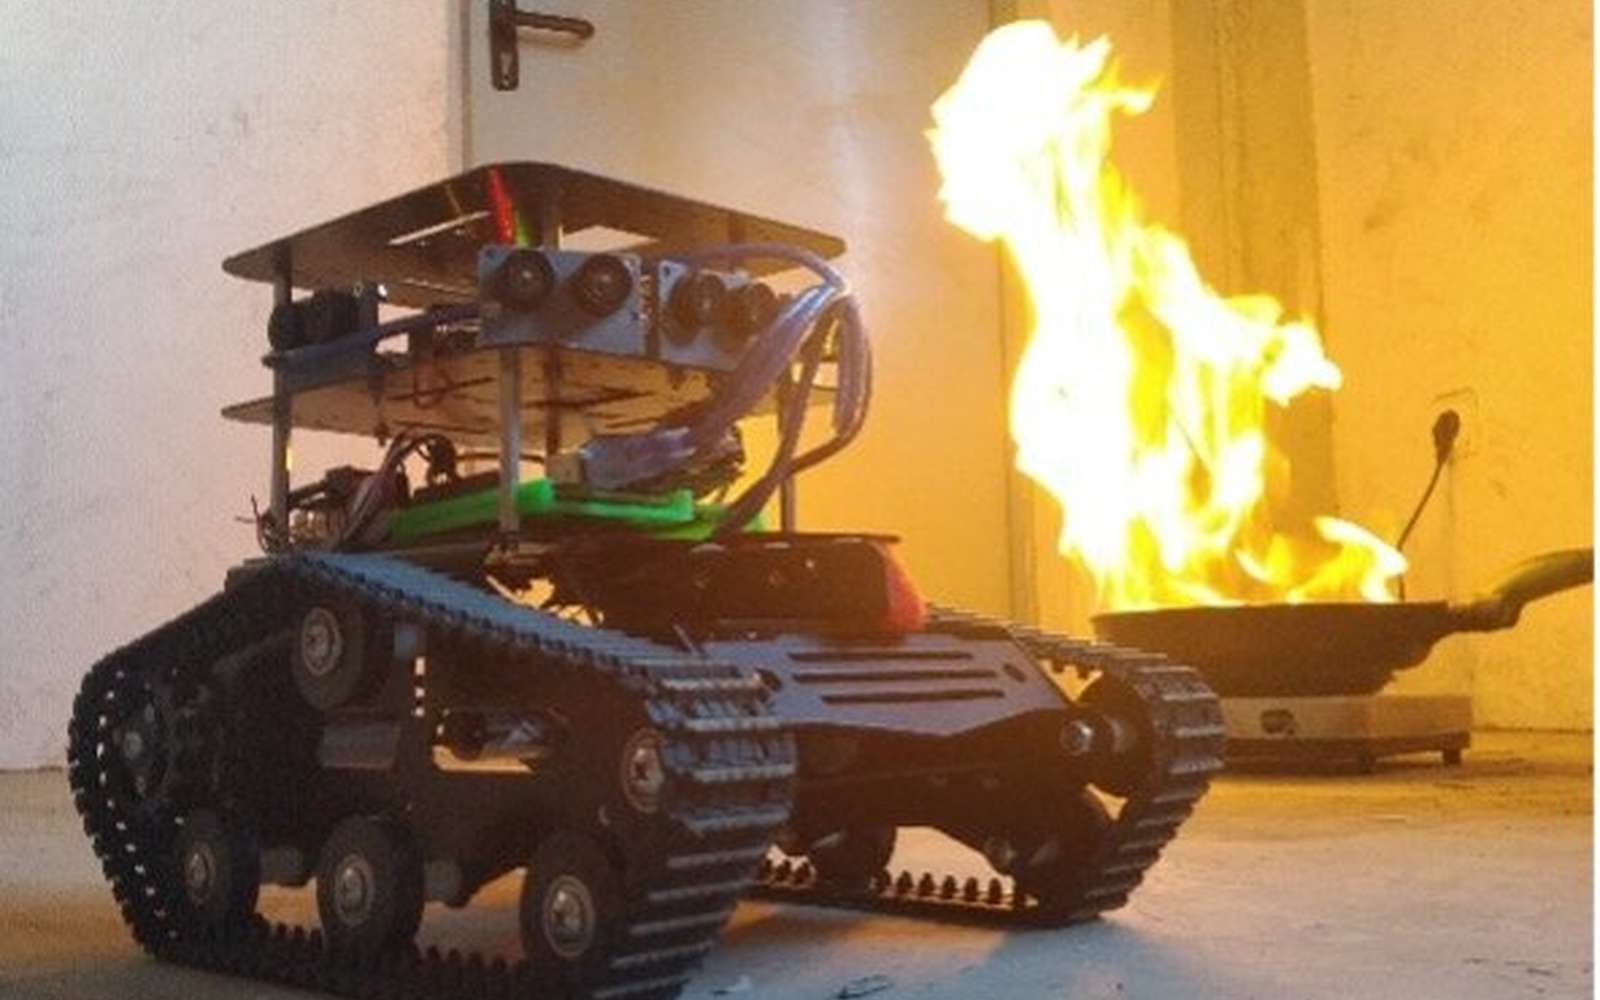 Ce robot va aider les pompiers à sauver des vies dans les incendies